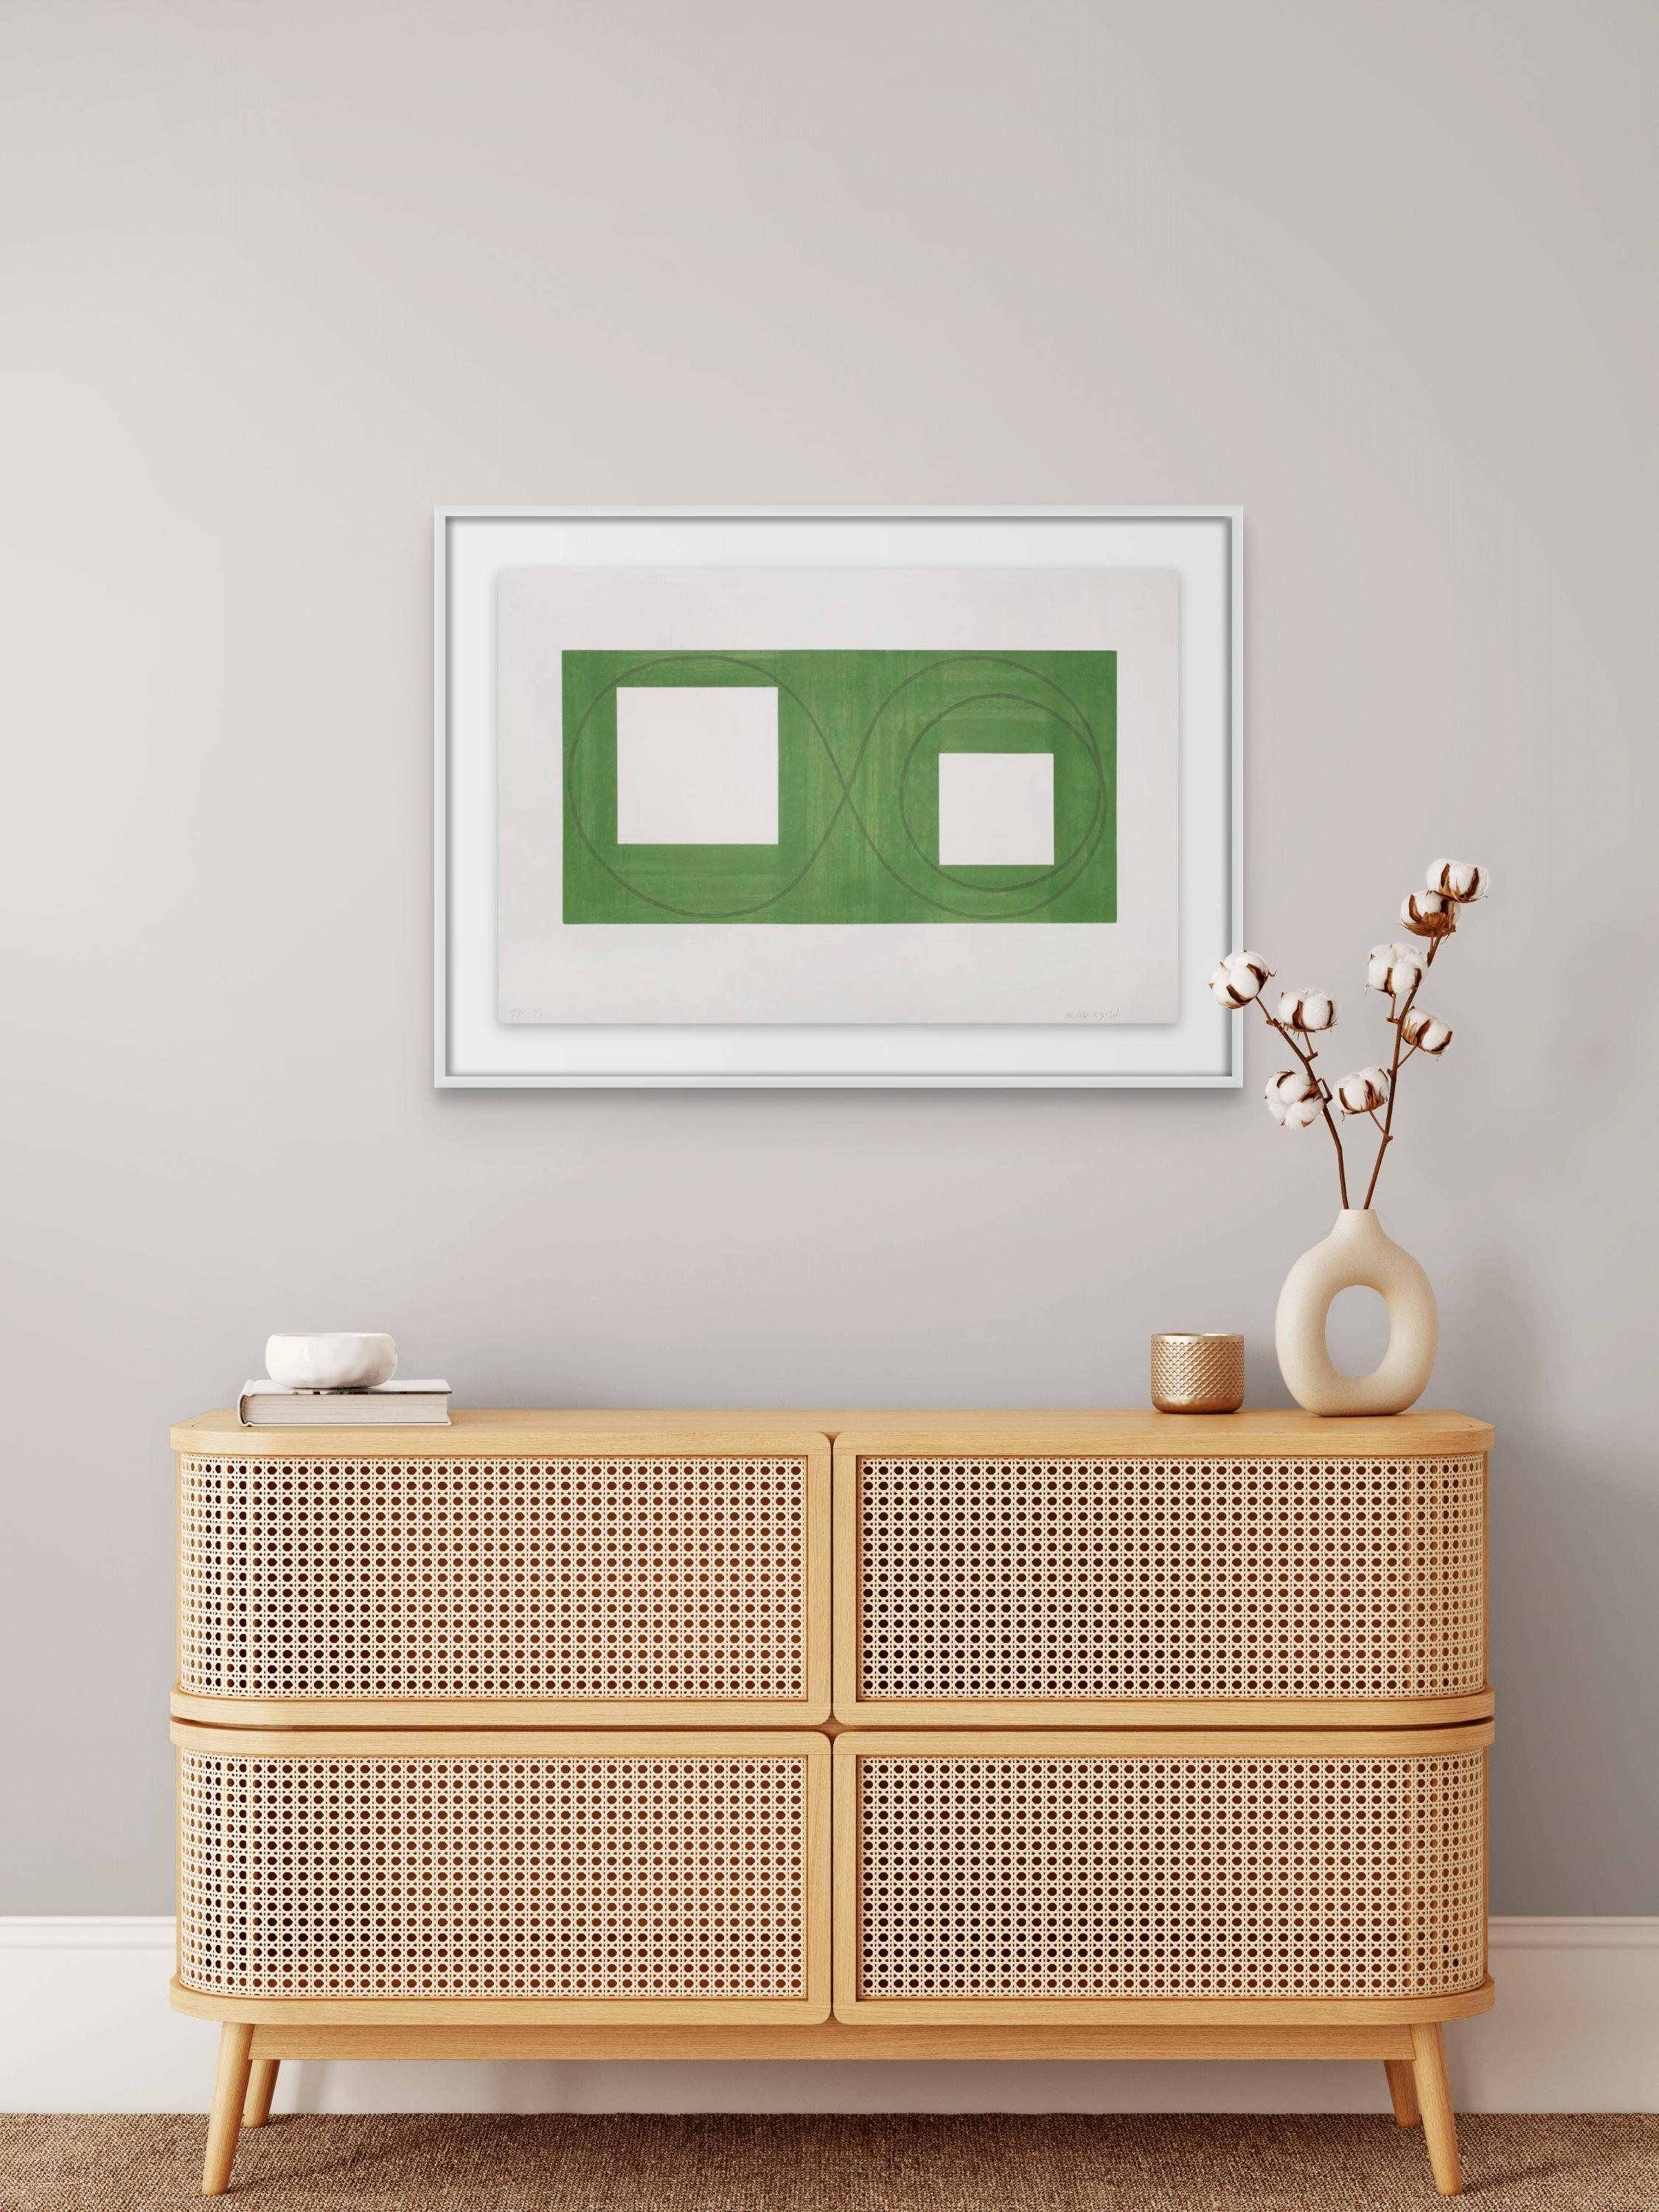 Offene Quadrate in einem grünen Bereich – Print von Robert Mangold